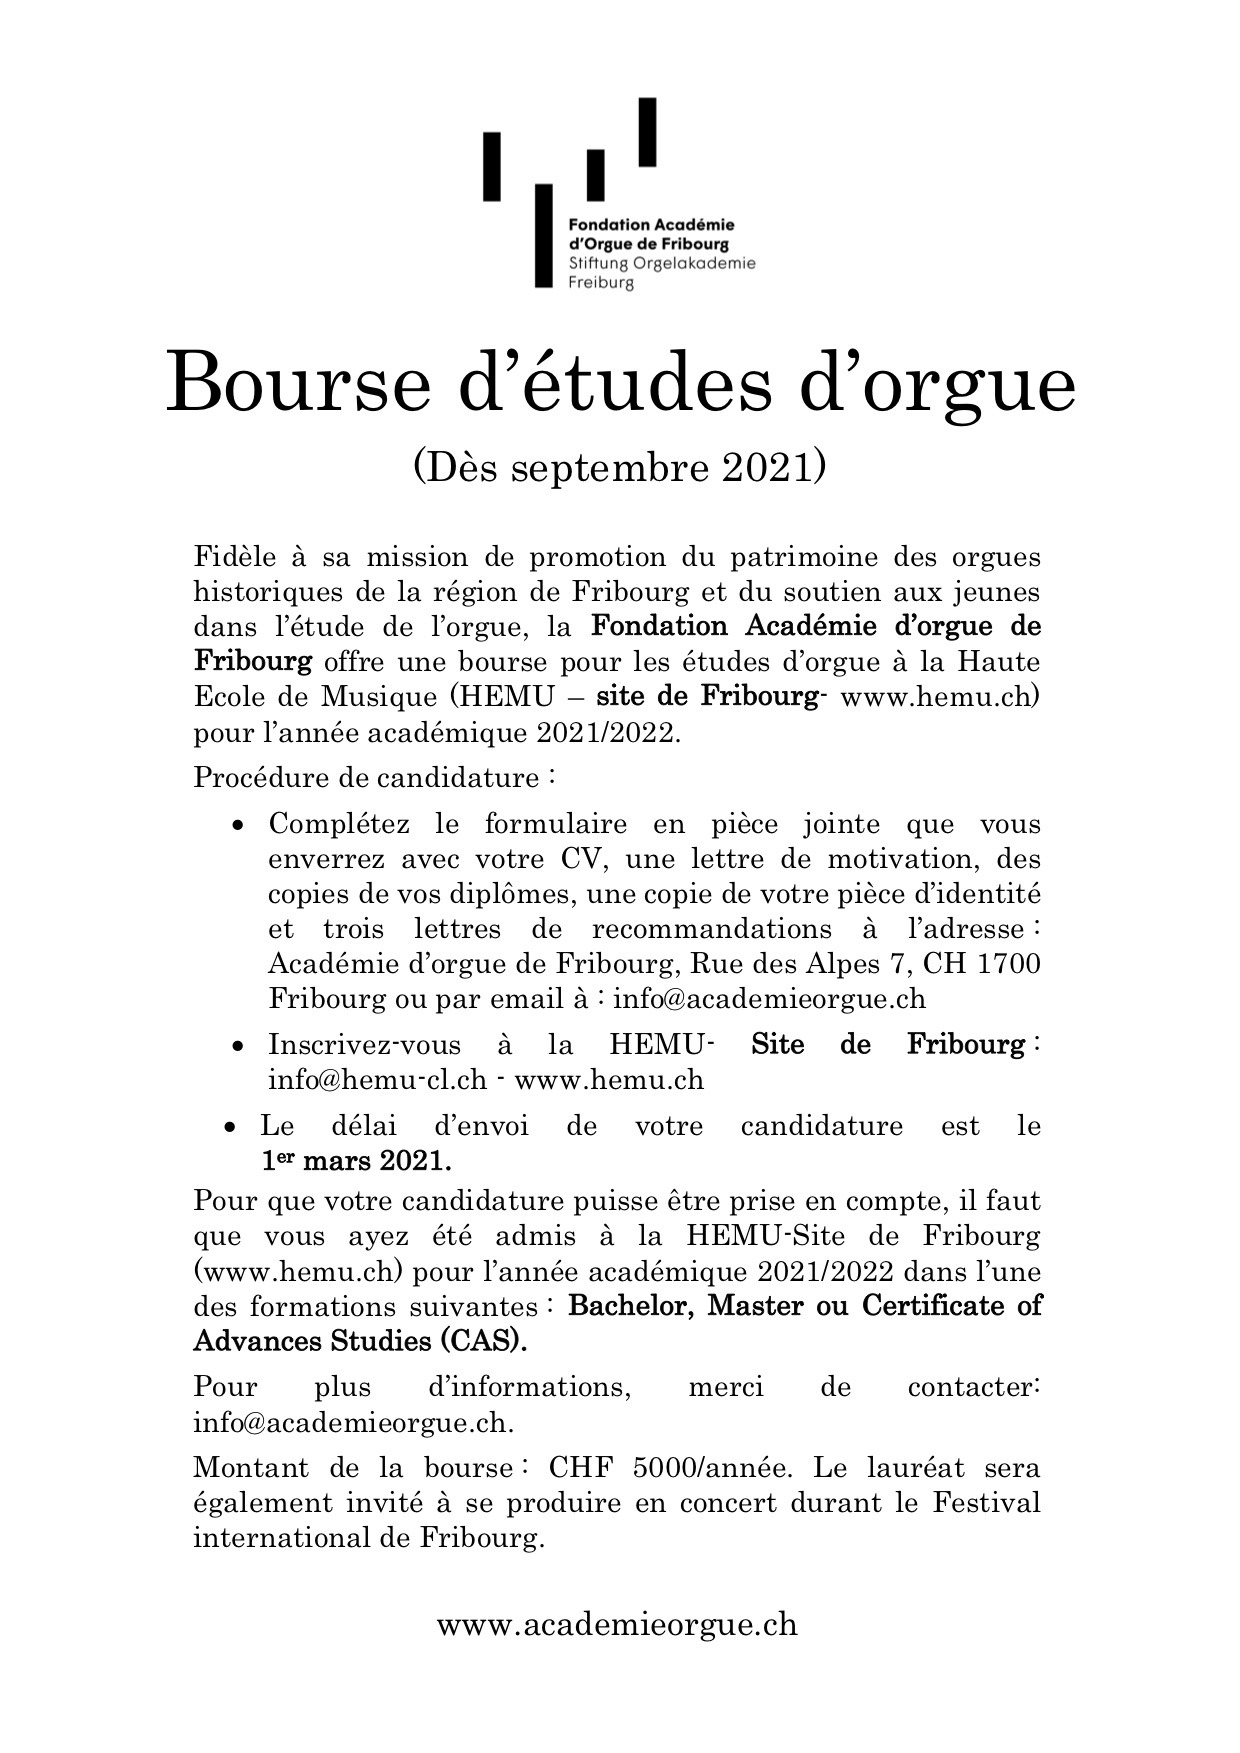 Image Bourse d'études d'orgue 2021/22